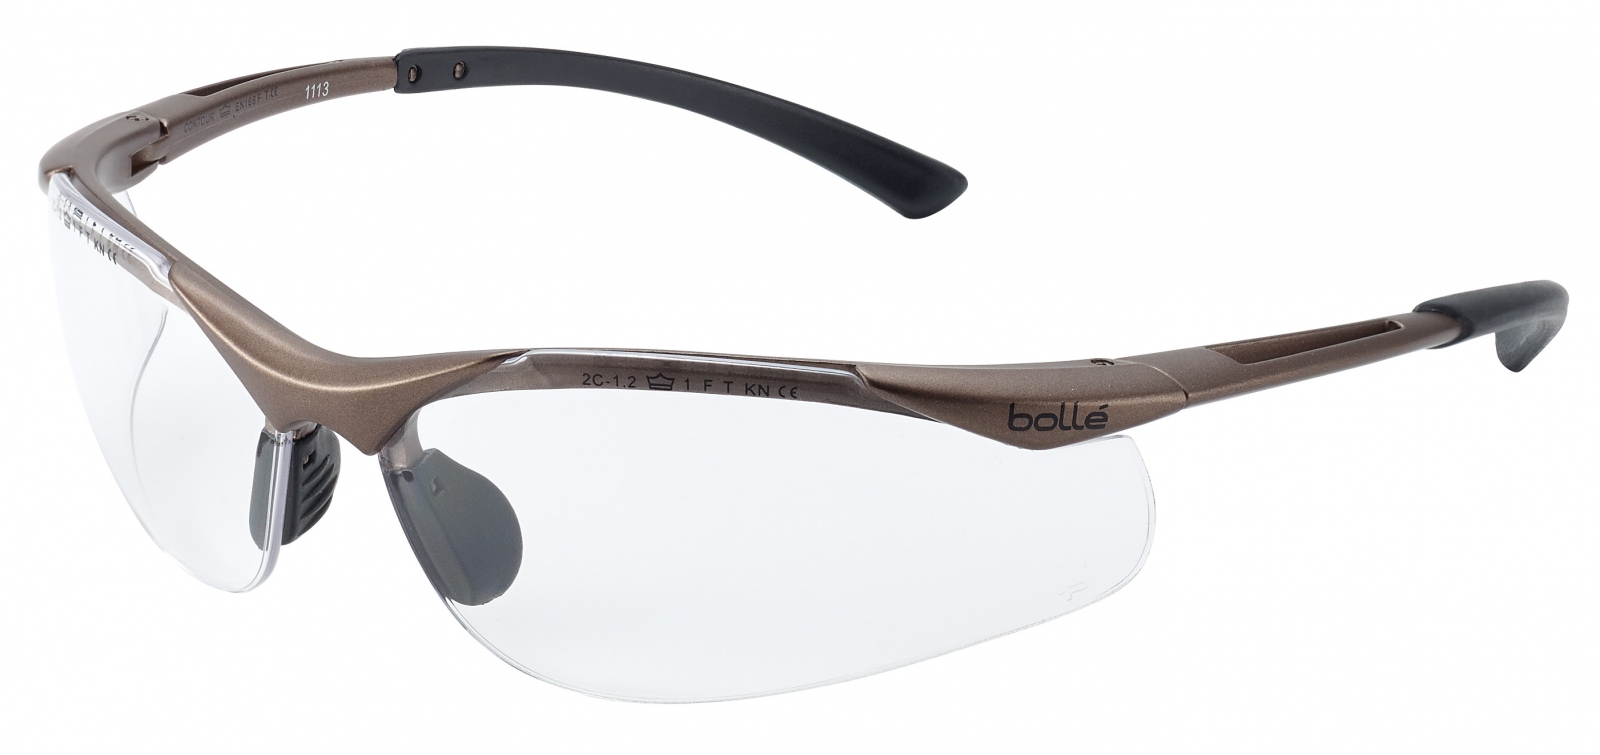 Bolle Contour Safety Specs Glasses Clear Lens 20g EN166 EN170 